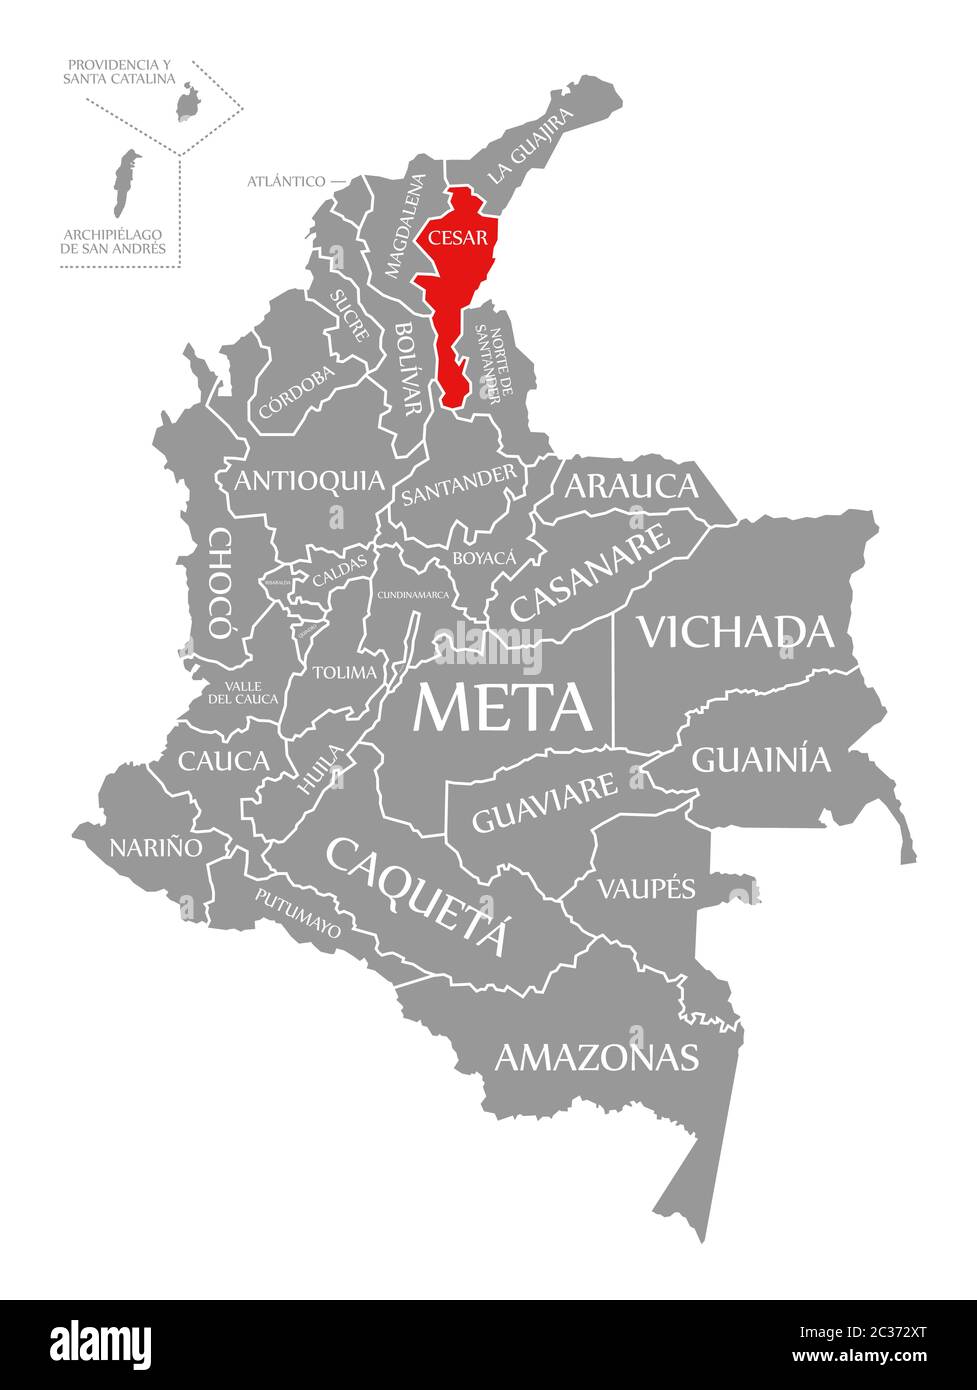 Cesar evidenziata in rosso nella mappa della Colombia Foto Stock